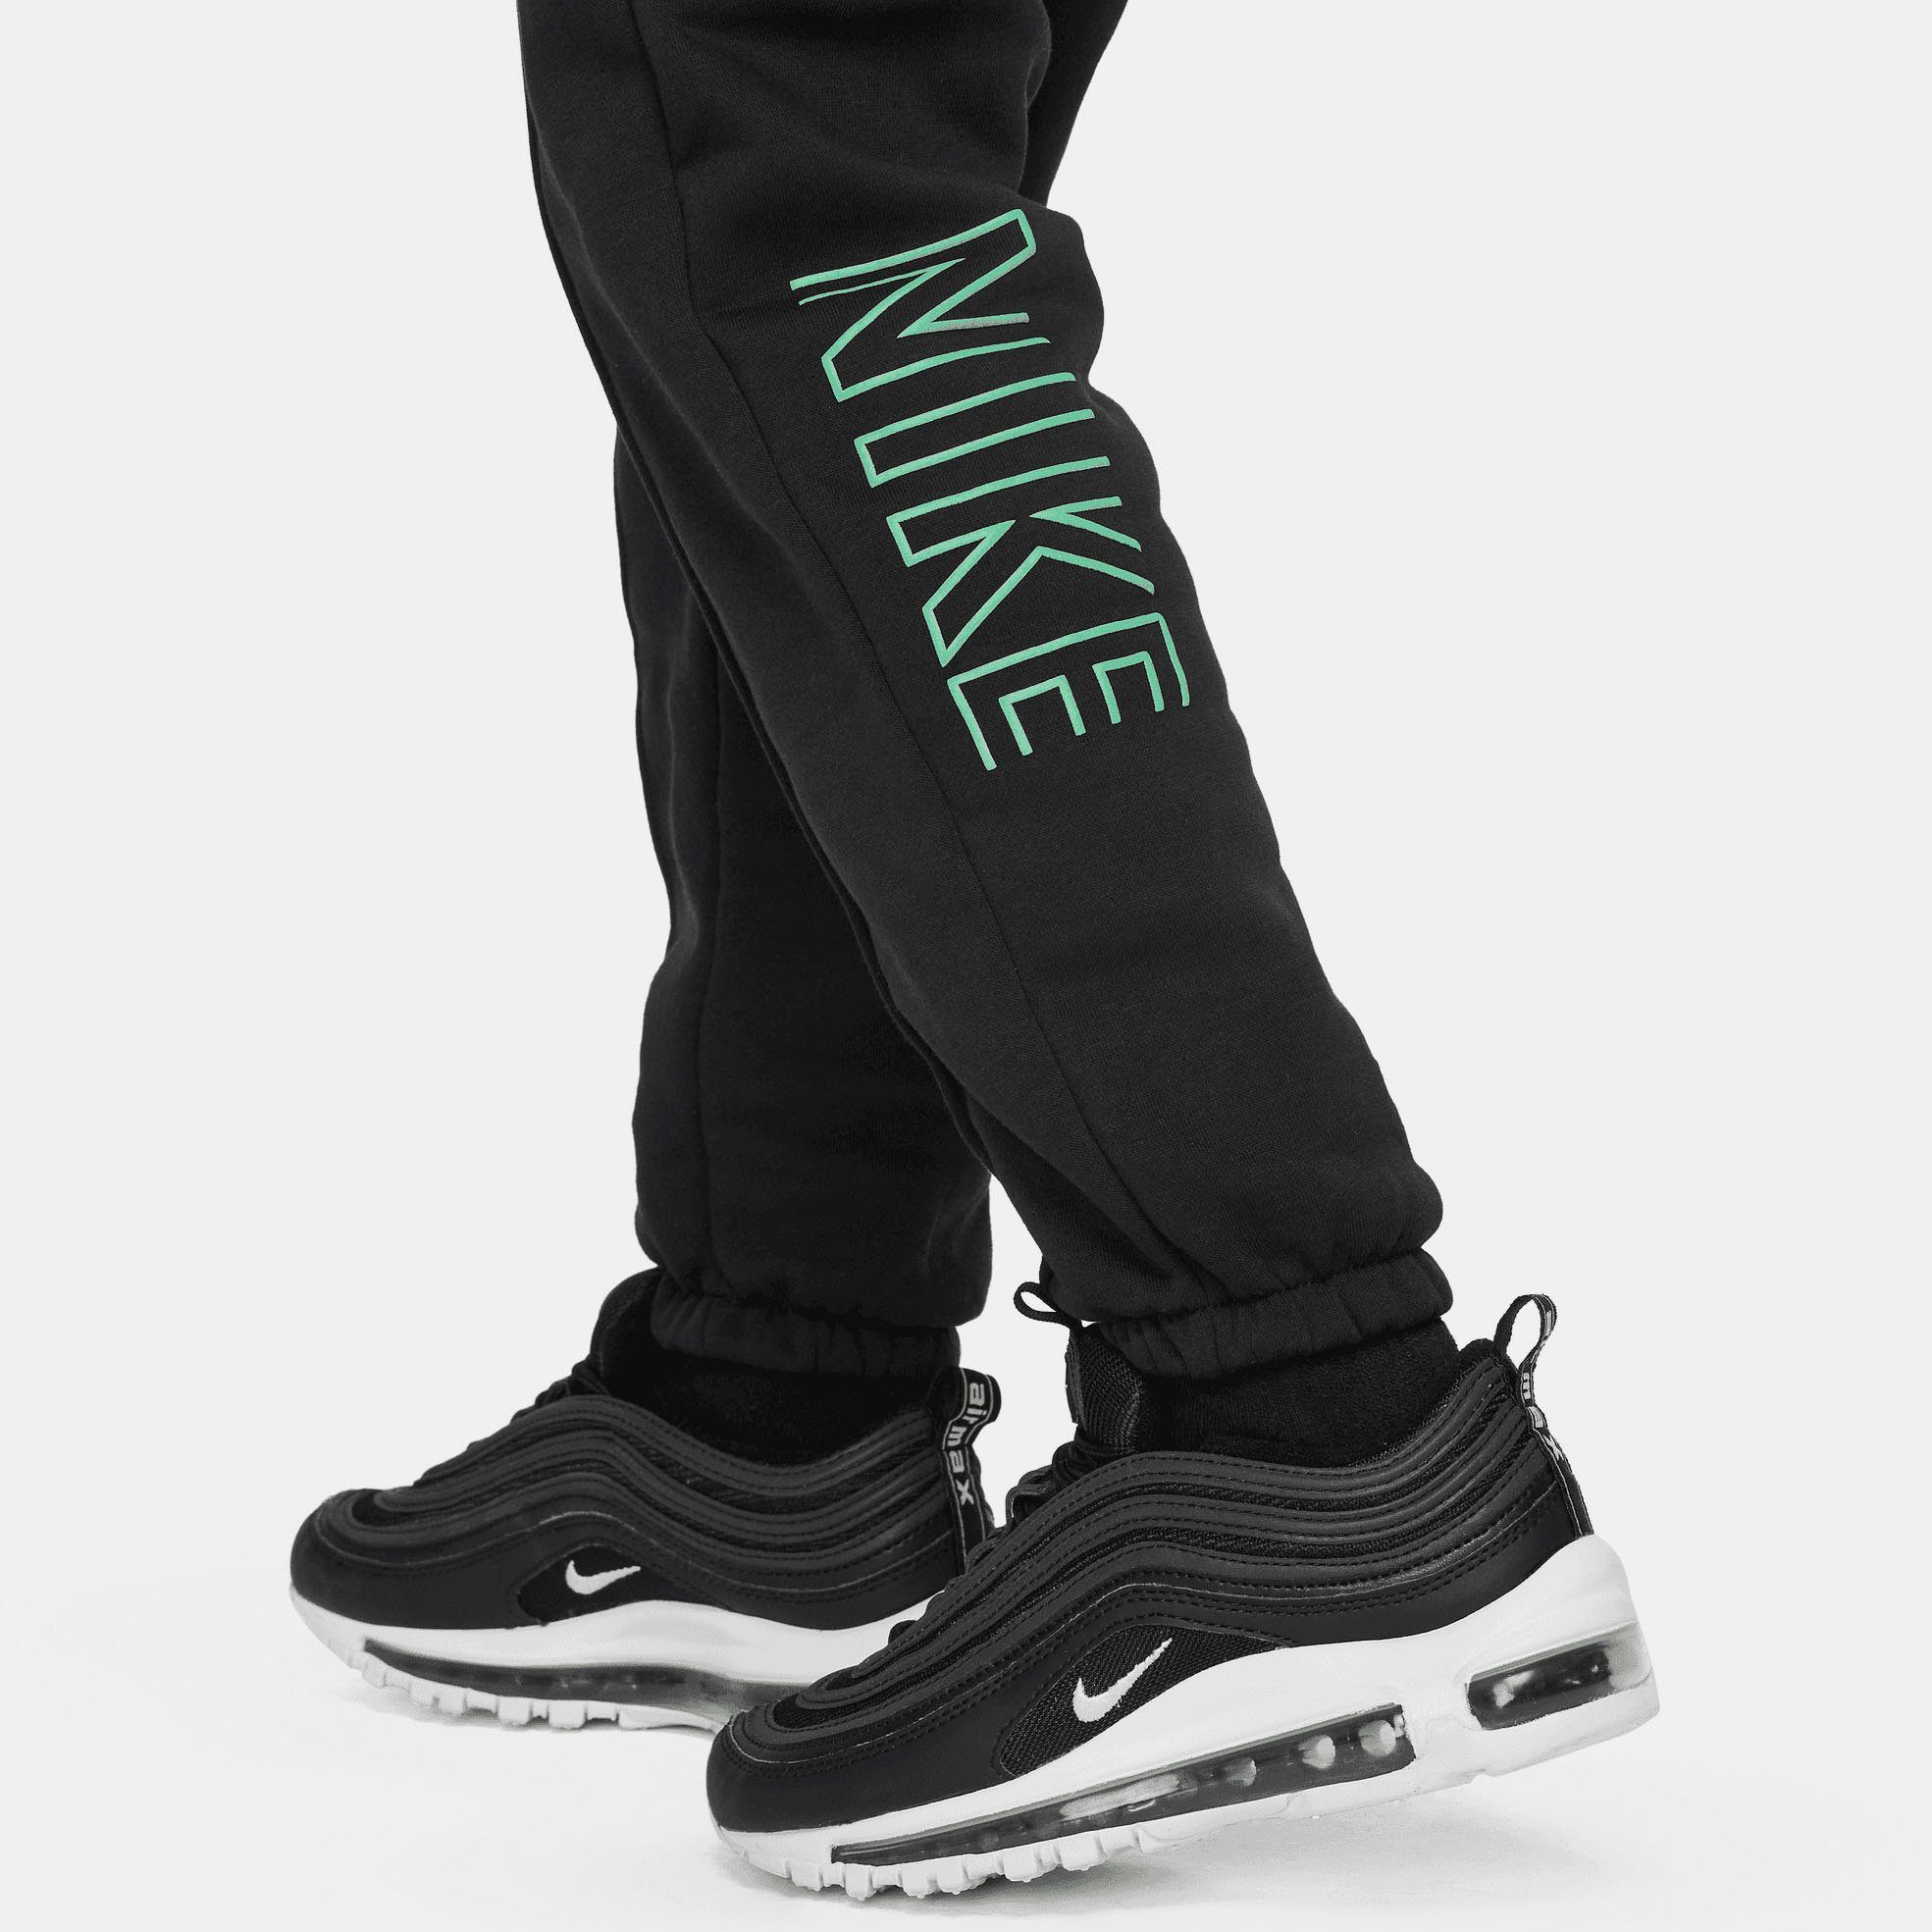 FLC Sportswear PANT SW CF - schwarz Nike für NSW Jogginghose Kinder